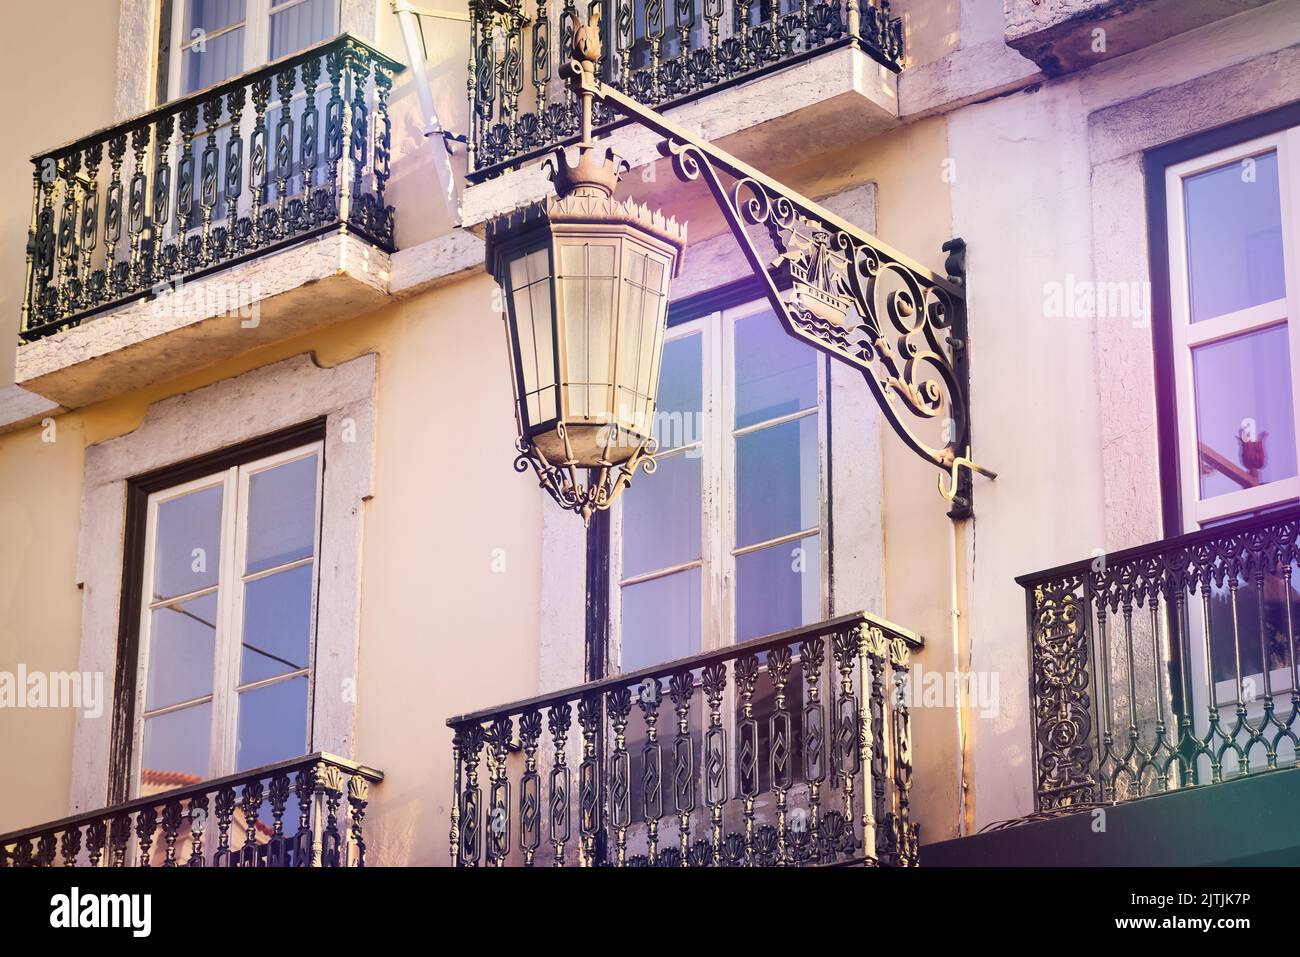 Lanterna d'epoca e balconi in ferro battuto a Lisbona. Architettura tipica della capitale del Portogallo. Foto Stock